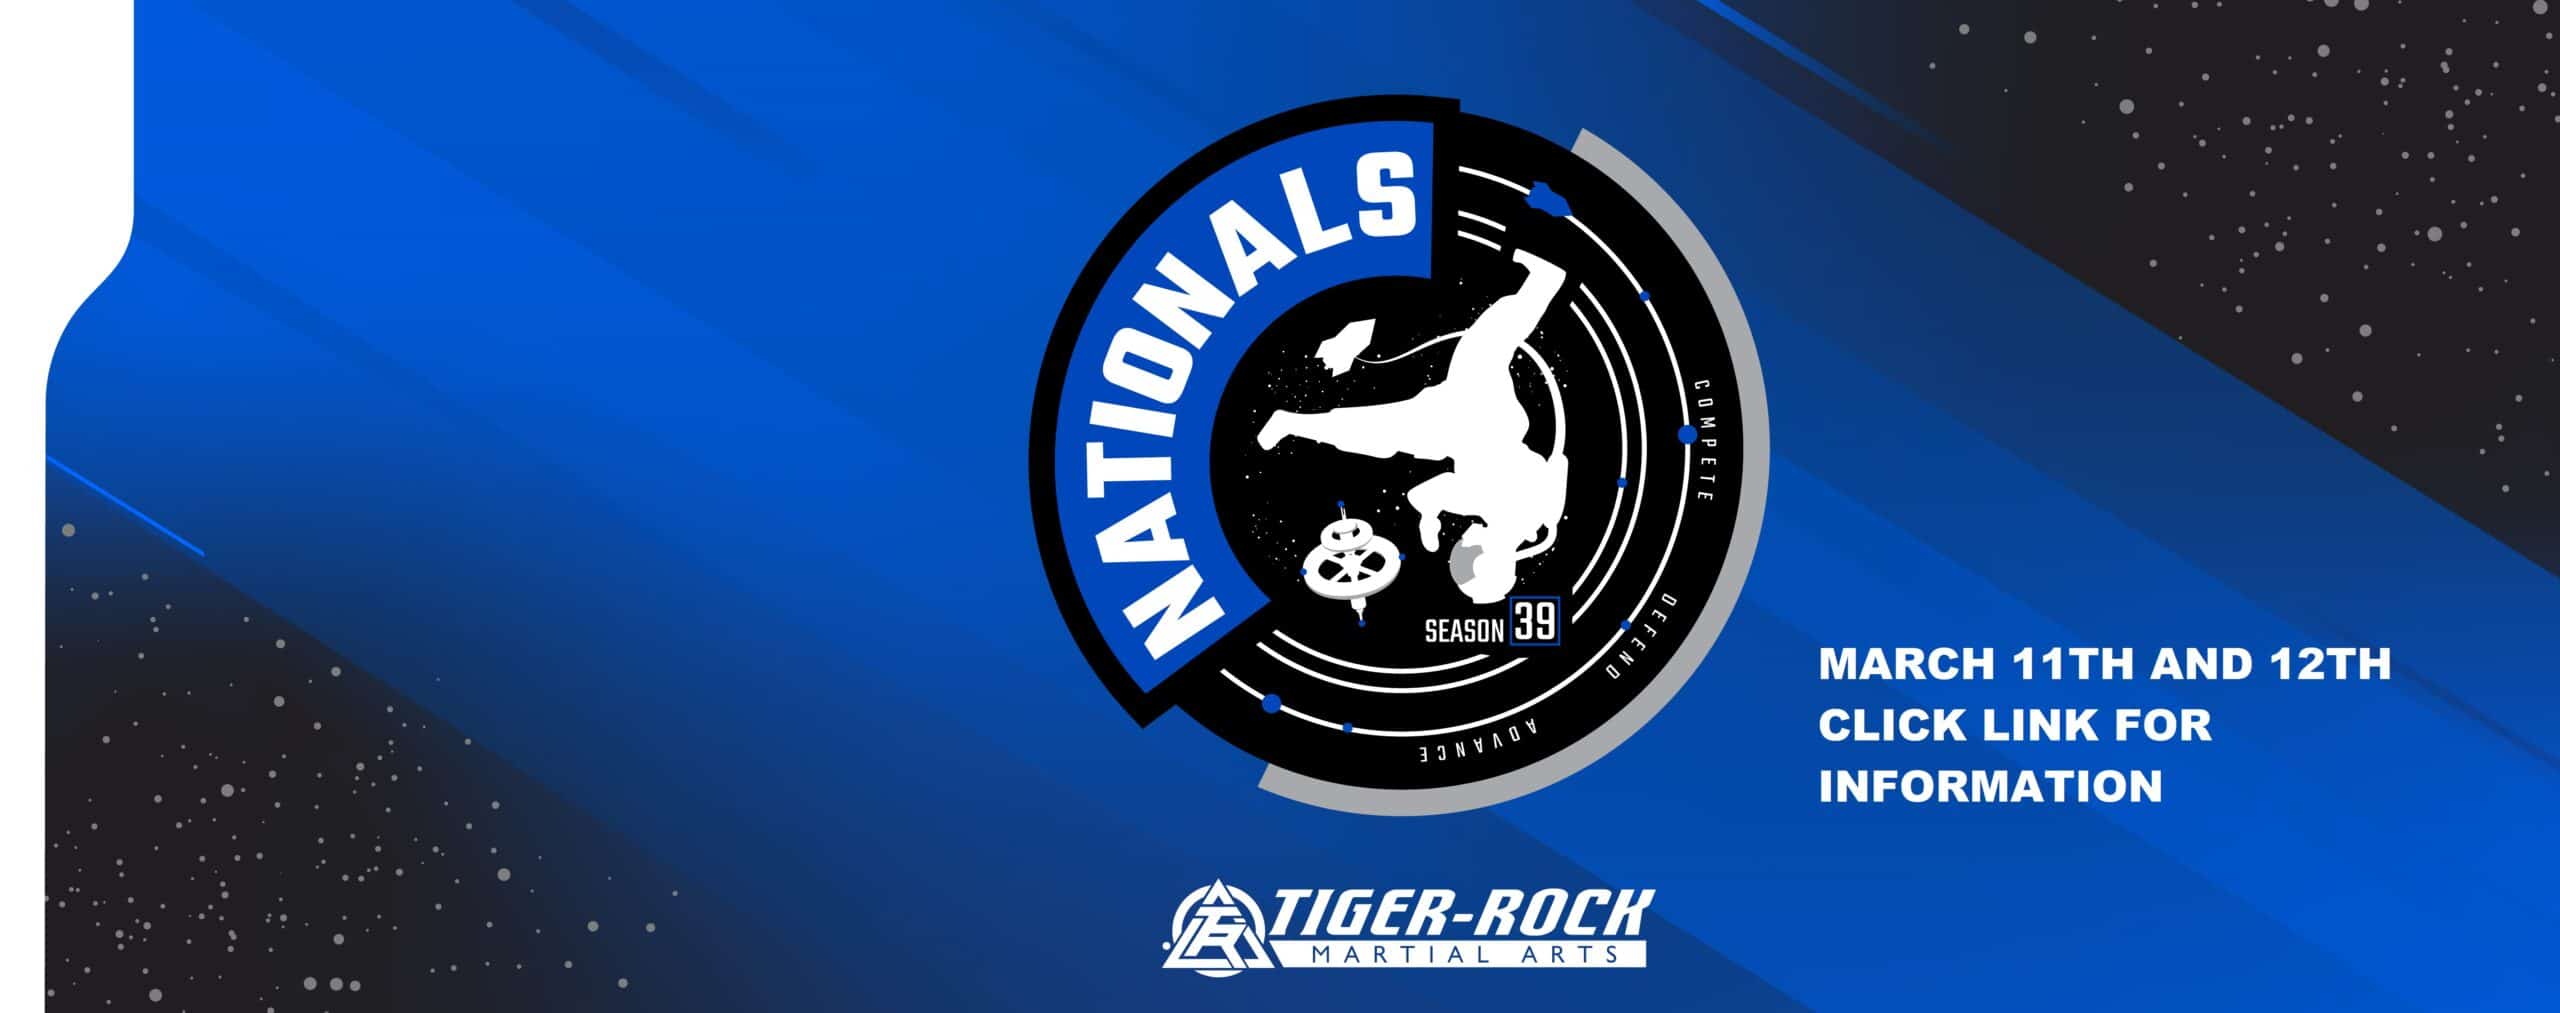 Tiger Rock National Tournament March 12, 2022 Tiger Rock Martial Arts